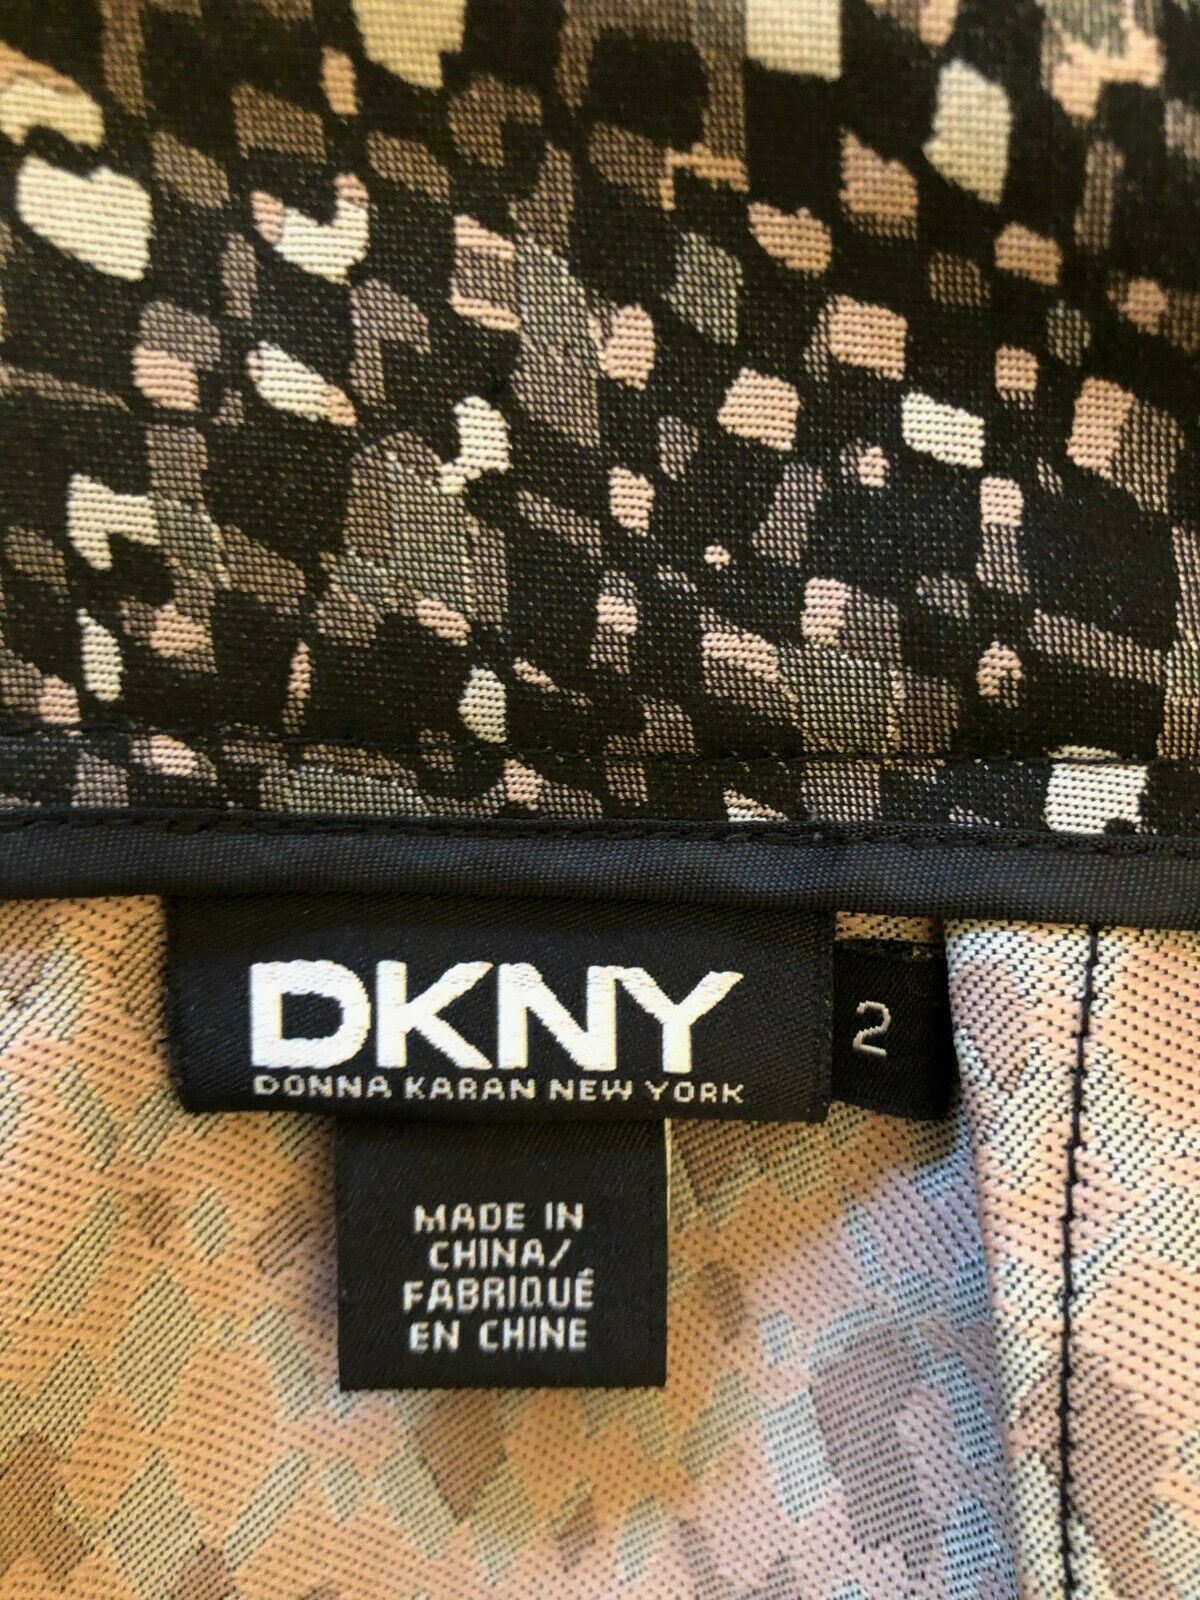 DKNY Geometric Patterned Black Mini Pencil Skirt Size UK 10 US 6 EU 38 Timeless Fashions